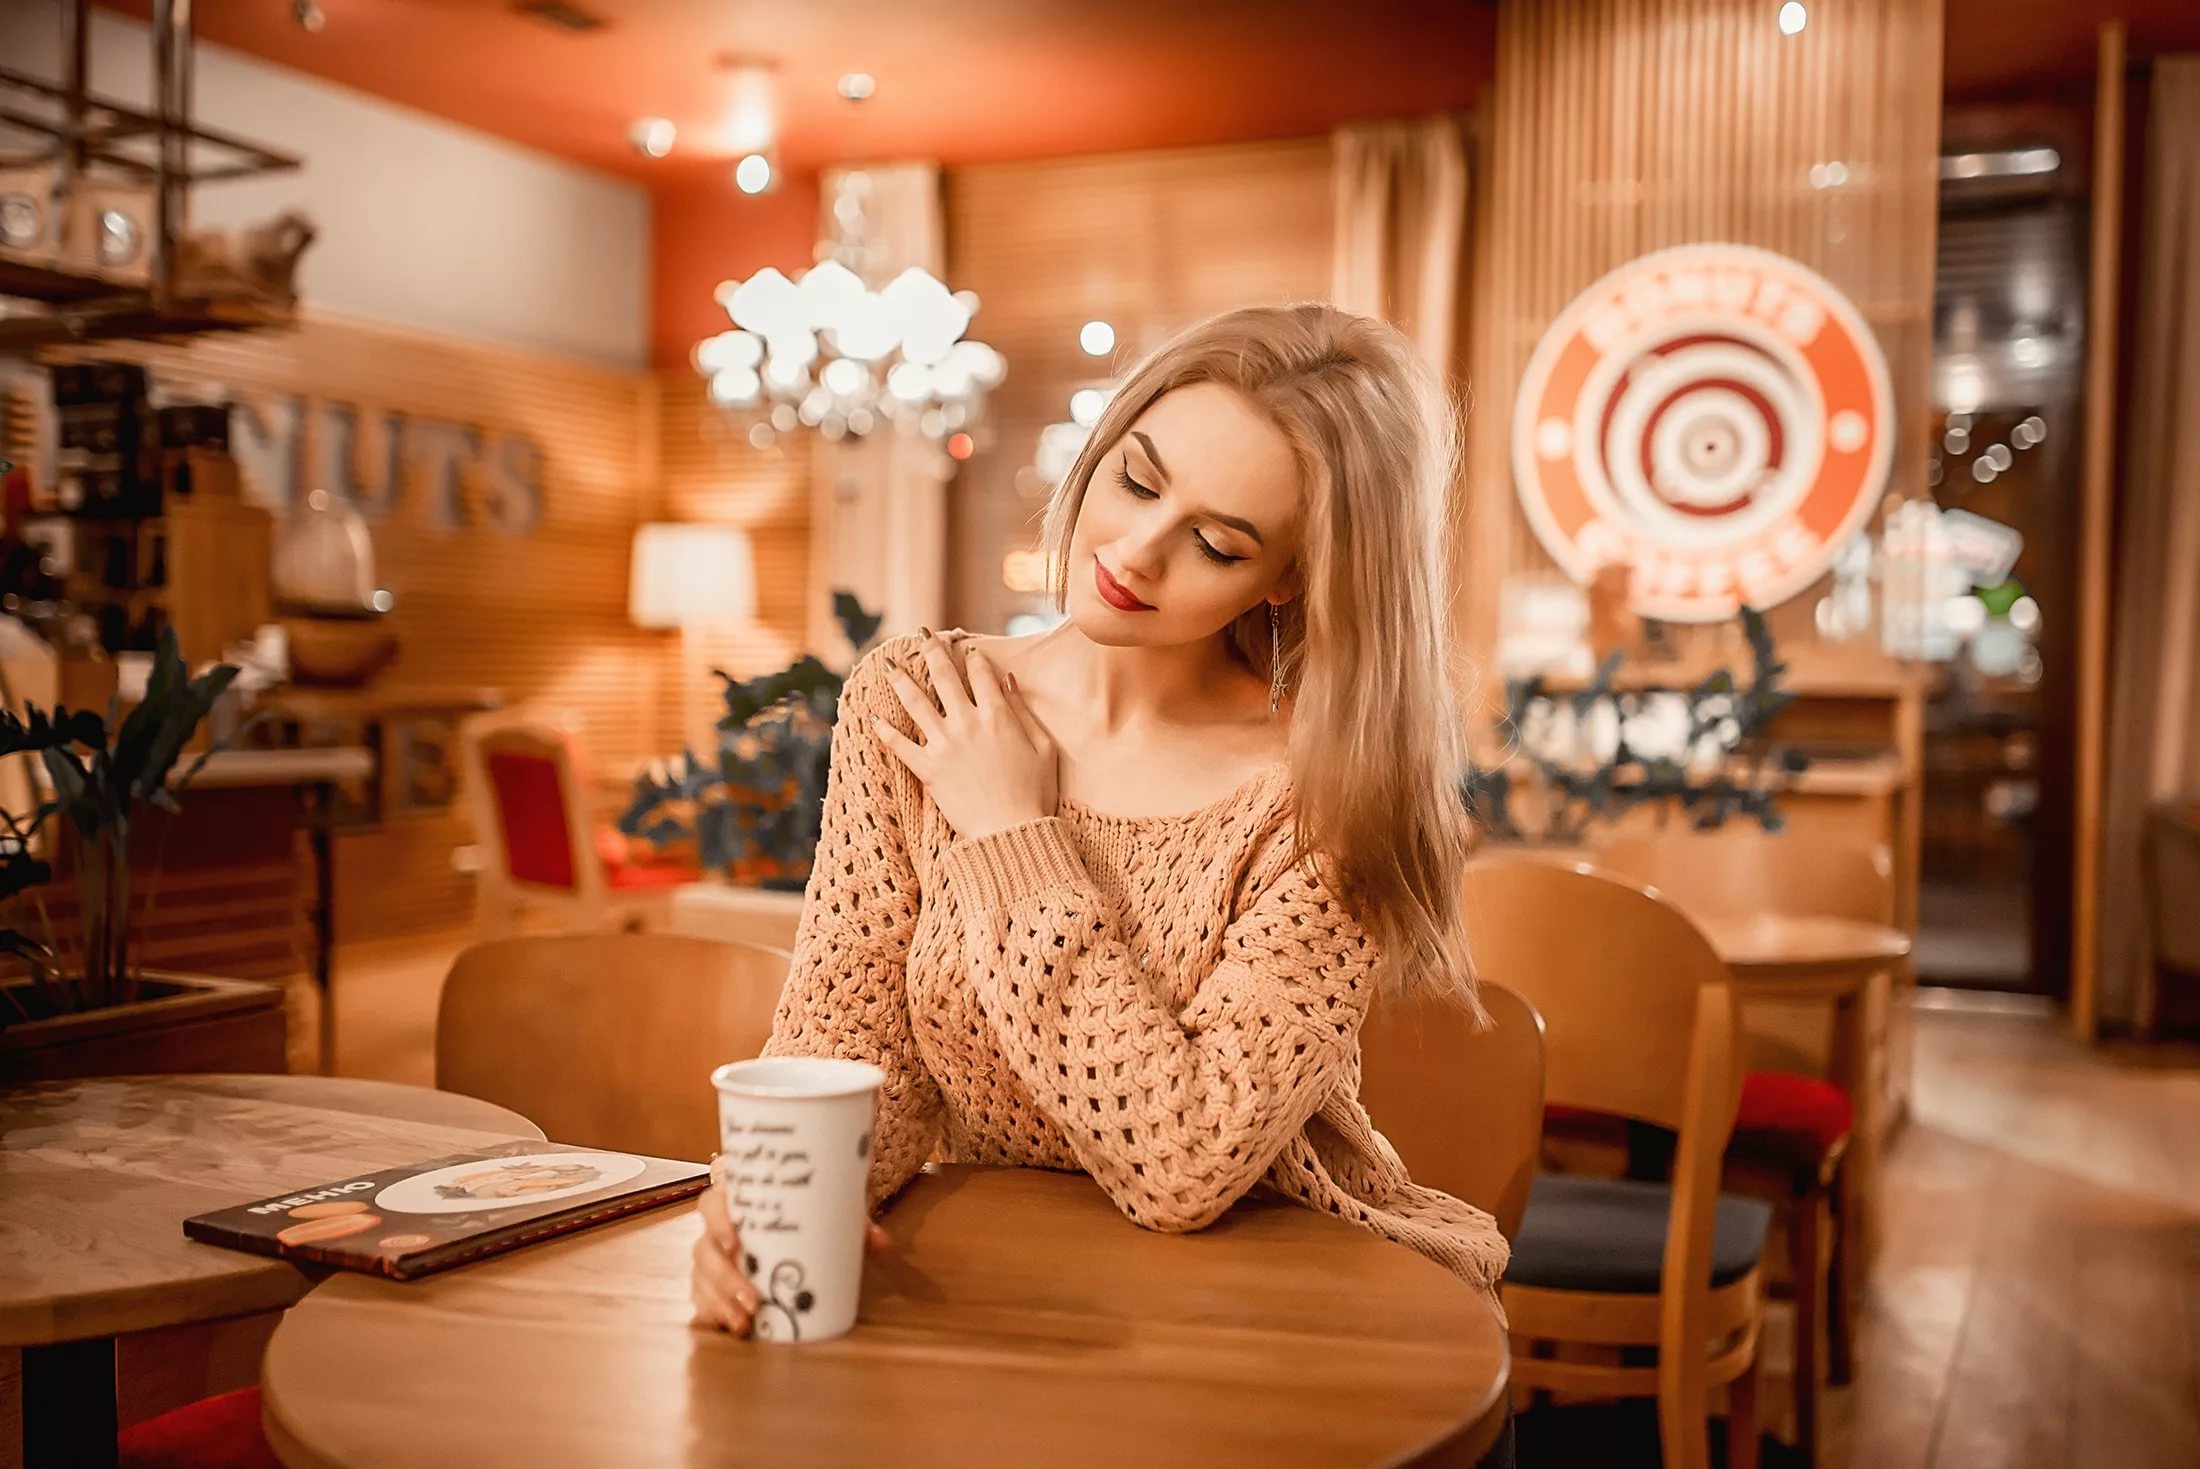 Фото в кафе девушки за столом без лица